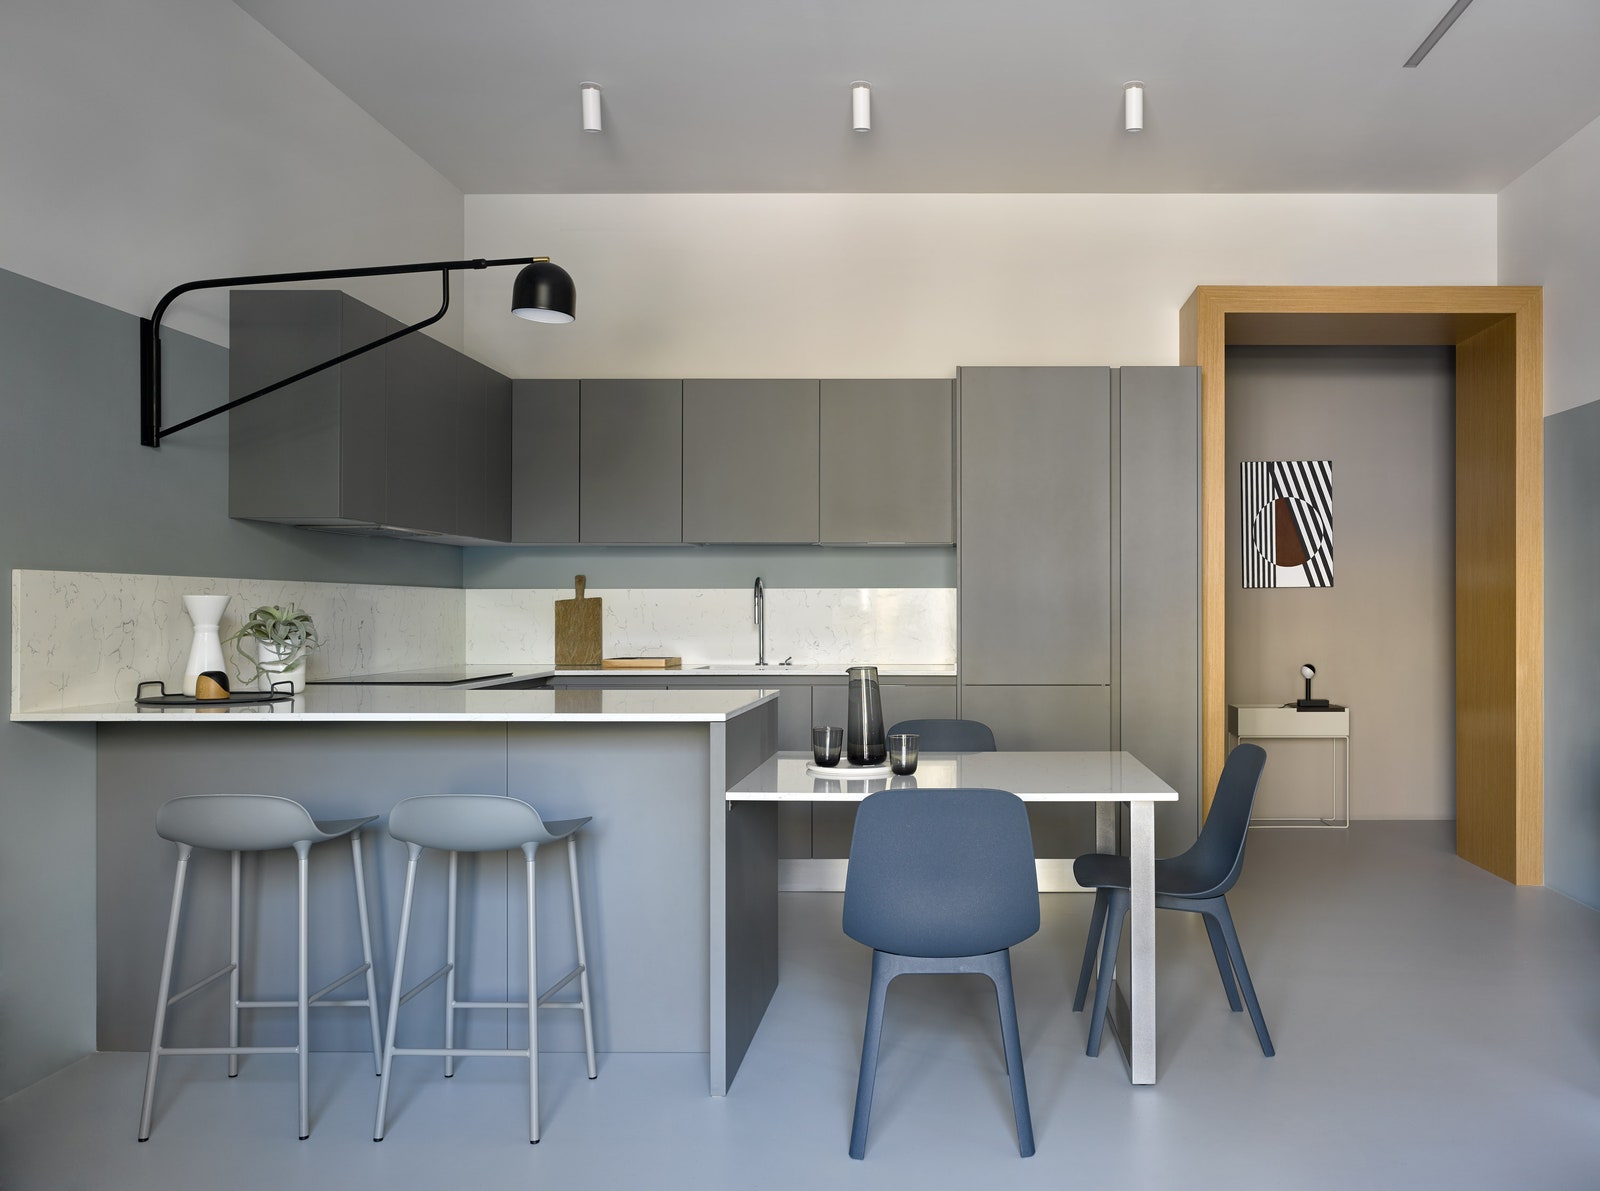 Вид на кухню из зоны гостиной. Стулья по дизайну Hay для IKEA барные стулья Normann Copenhagen светильник Bellman Pholc.